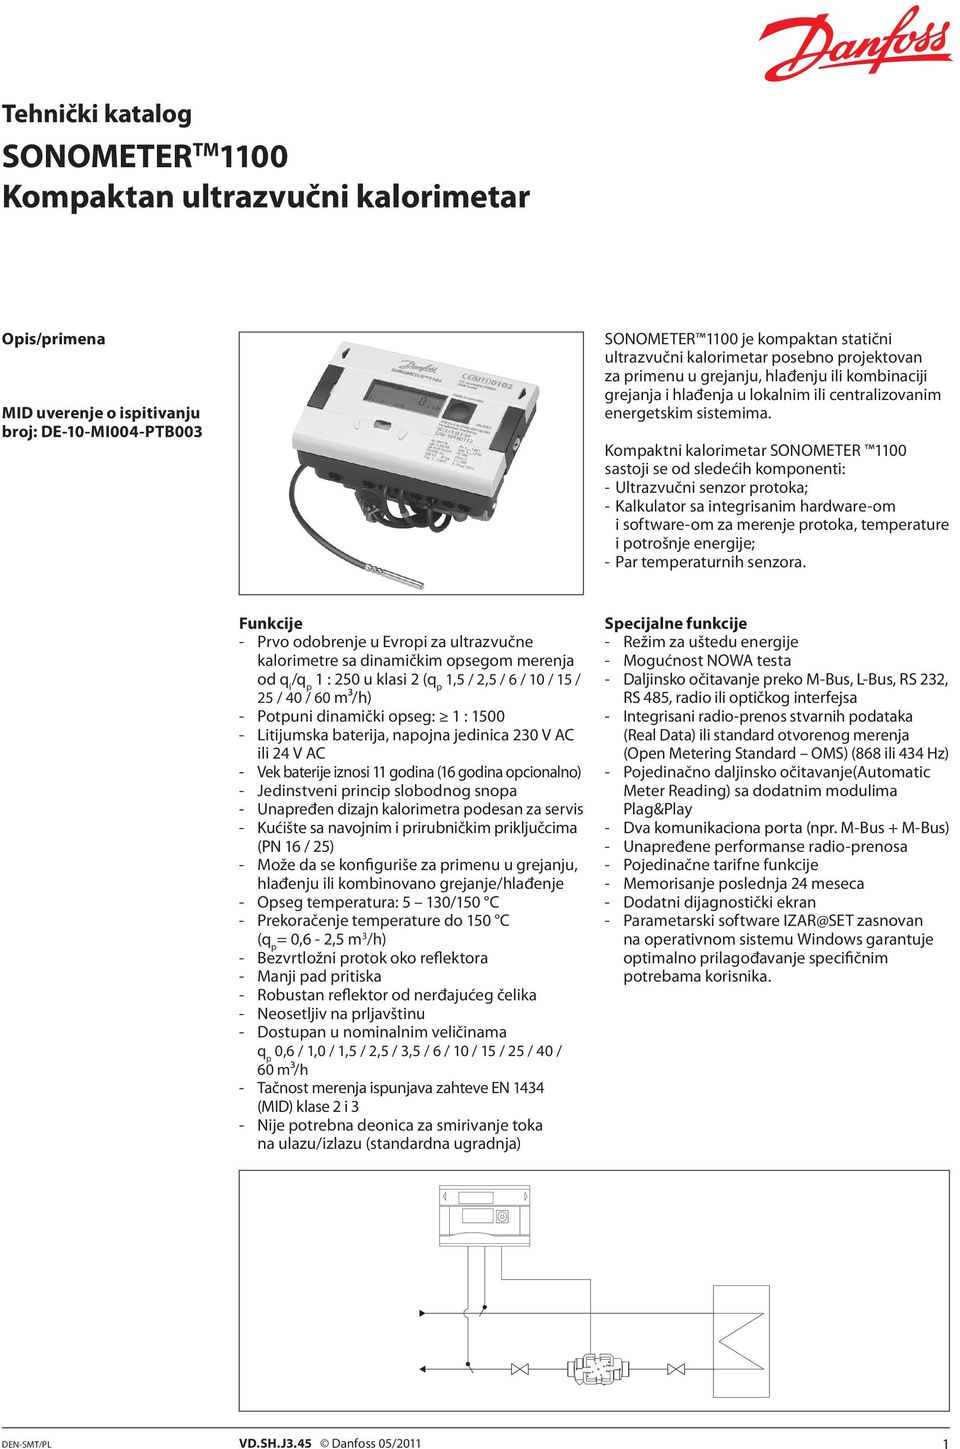 Kompaktni kalorimetar SONOMETER 00 sastoji se od sledećih komponenti: - Ultrazvučni senzor protoka; - Kalkulator sa integrisanim hardware-om i software-om za merenje protoka, temperature i potrošnje